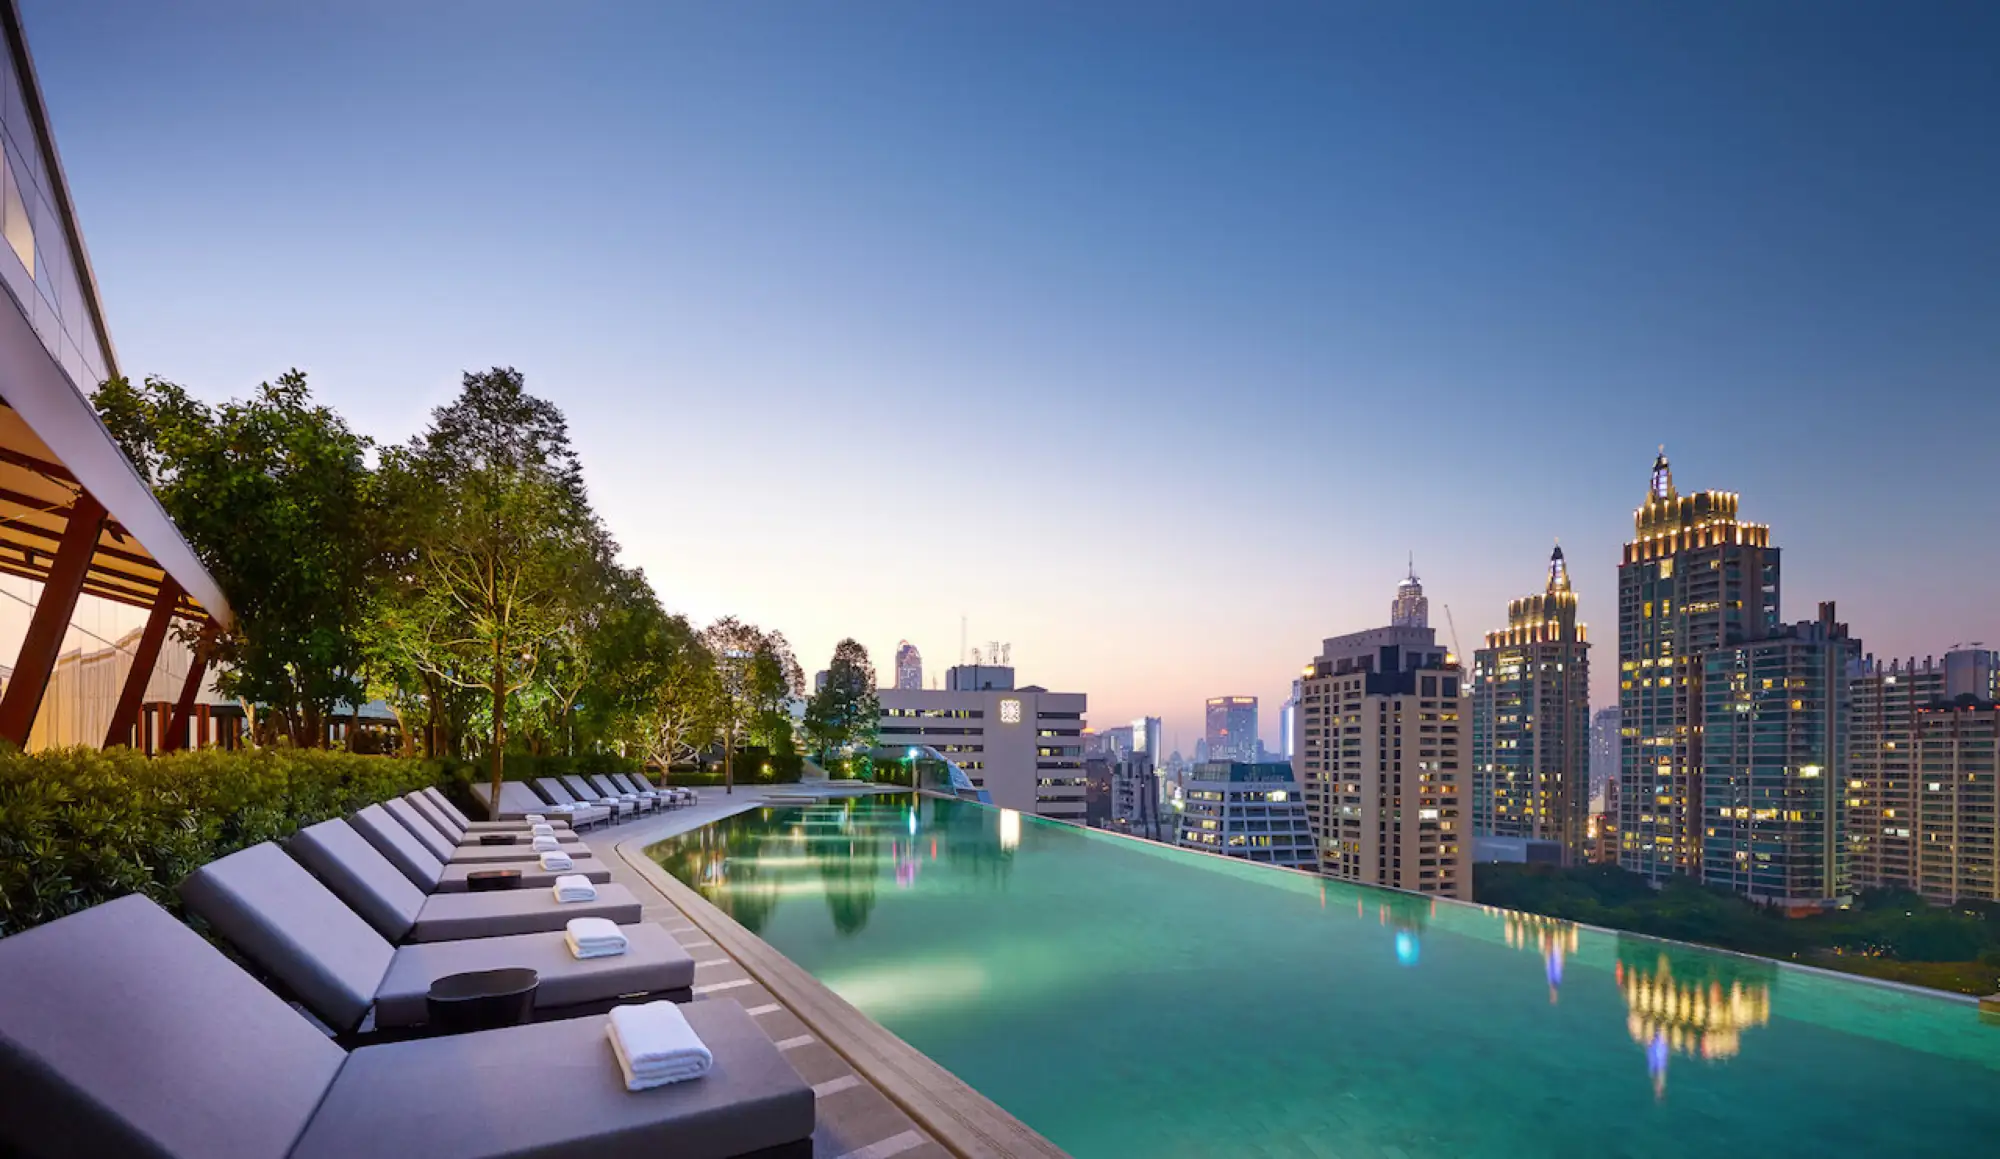 泰國首家曼谷柏悅酒店Park Hyatt Bangkok開幕 提供全球Park Hyat最優惠價格 競爭曼谷五星酒店市場